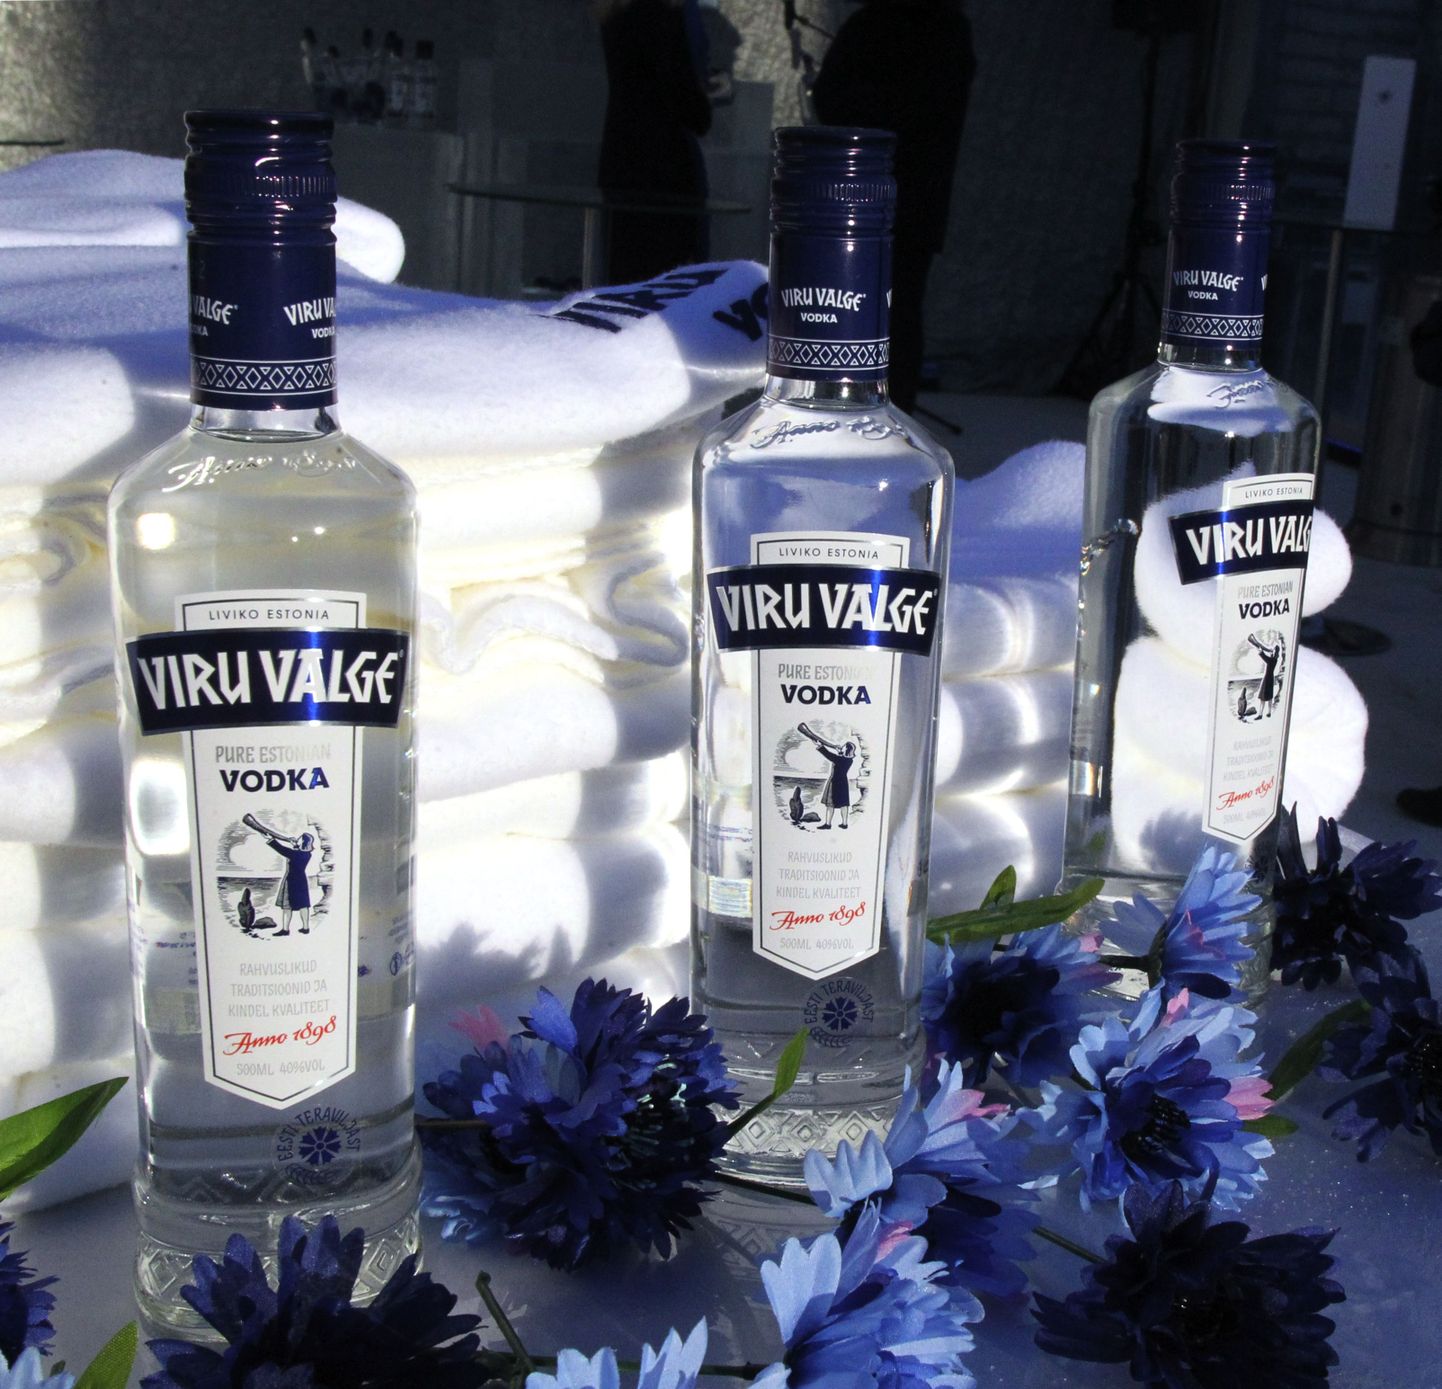 Soome politsei kahtlustab, et Venemaal müüakse «Viru Valge» sildiga viinapudeleid, mis tegelikult sisaldavad solkalkoholi.